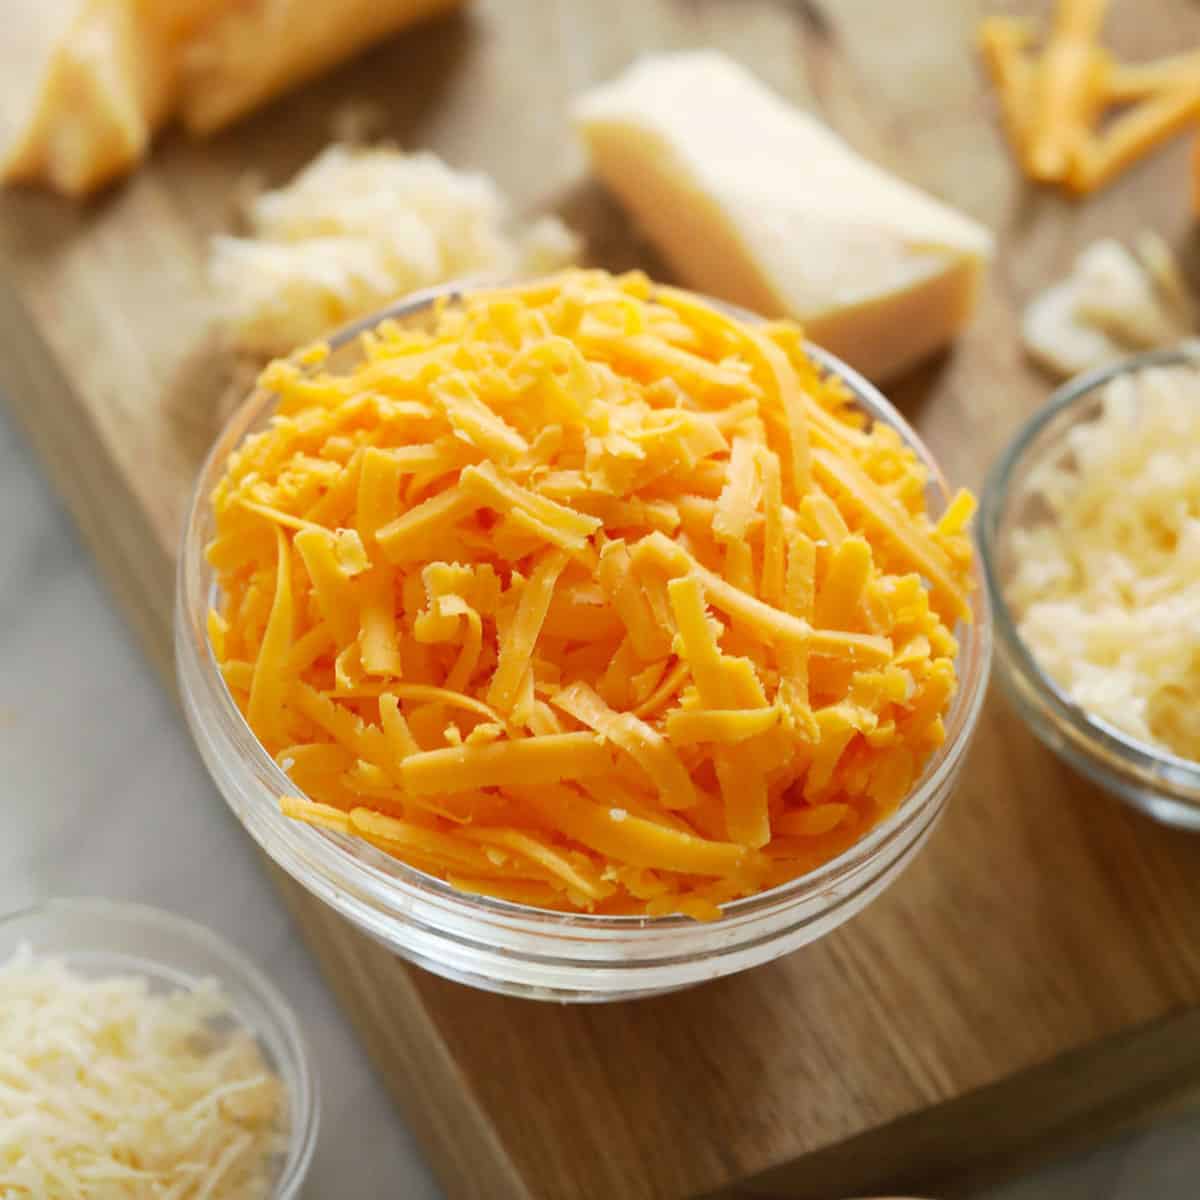 ارزش غذایی پنیر چدار - کترینگ آتیسا